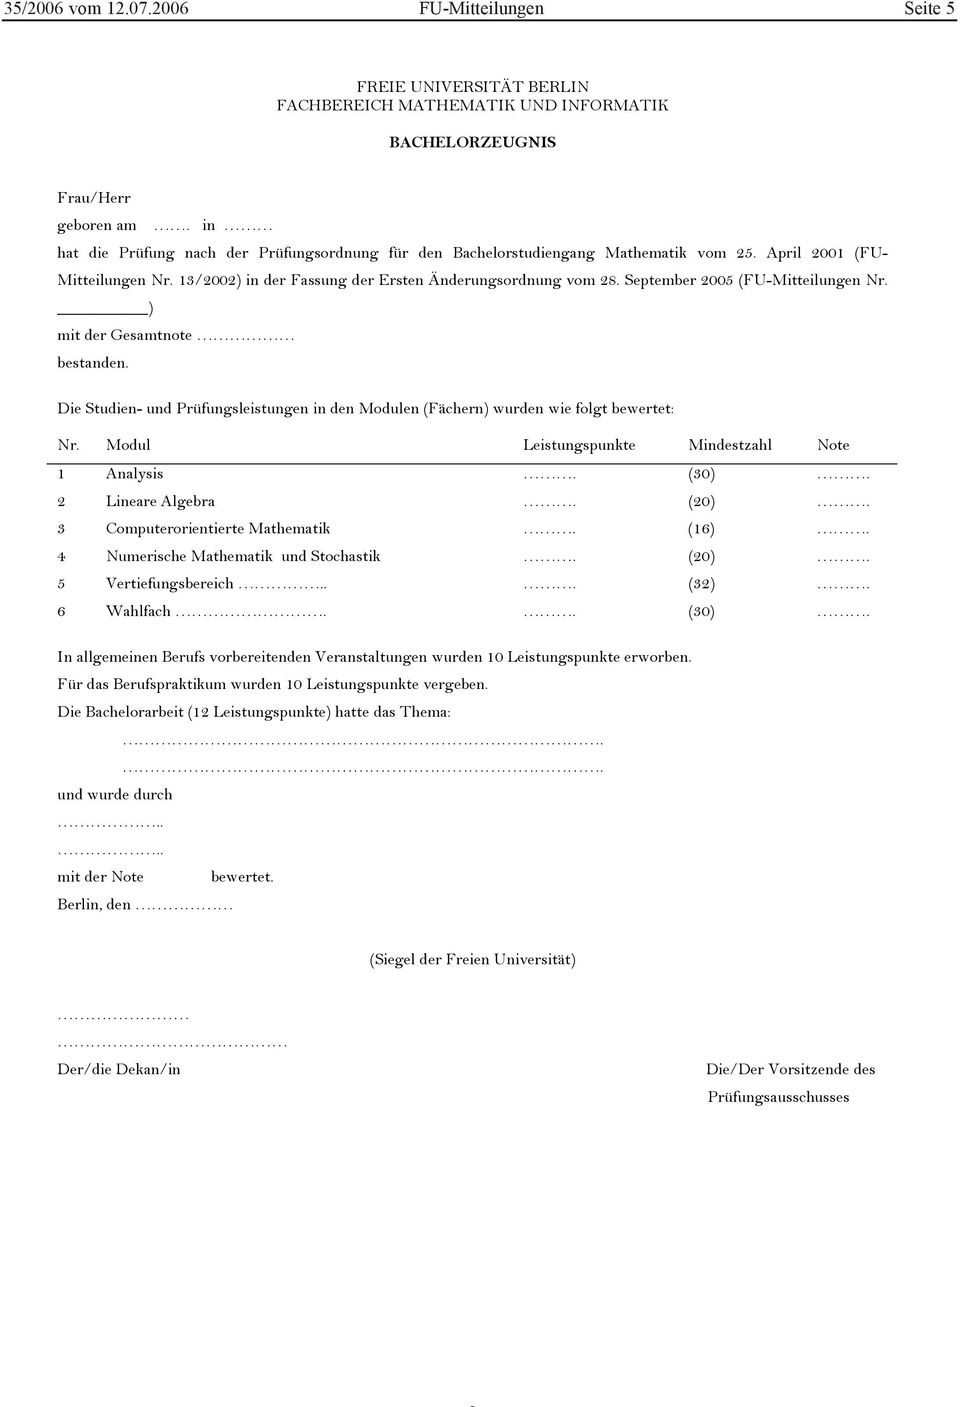 September 2005 (FU-Mitteilungen Nr. ) mit der Gesamtnote bestanden. Die Studien- und Prüfungsleistungen in den Modulen (Fächern) wurden wie folgt bewertet: Nr.